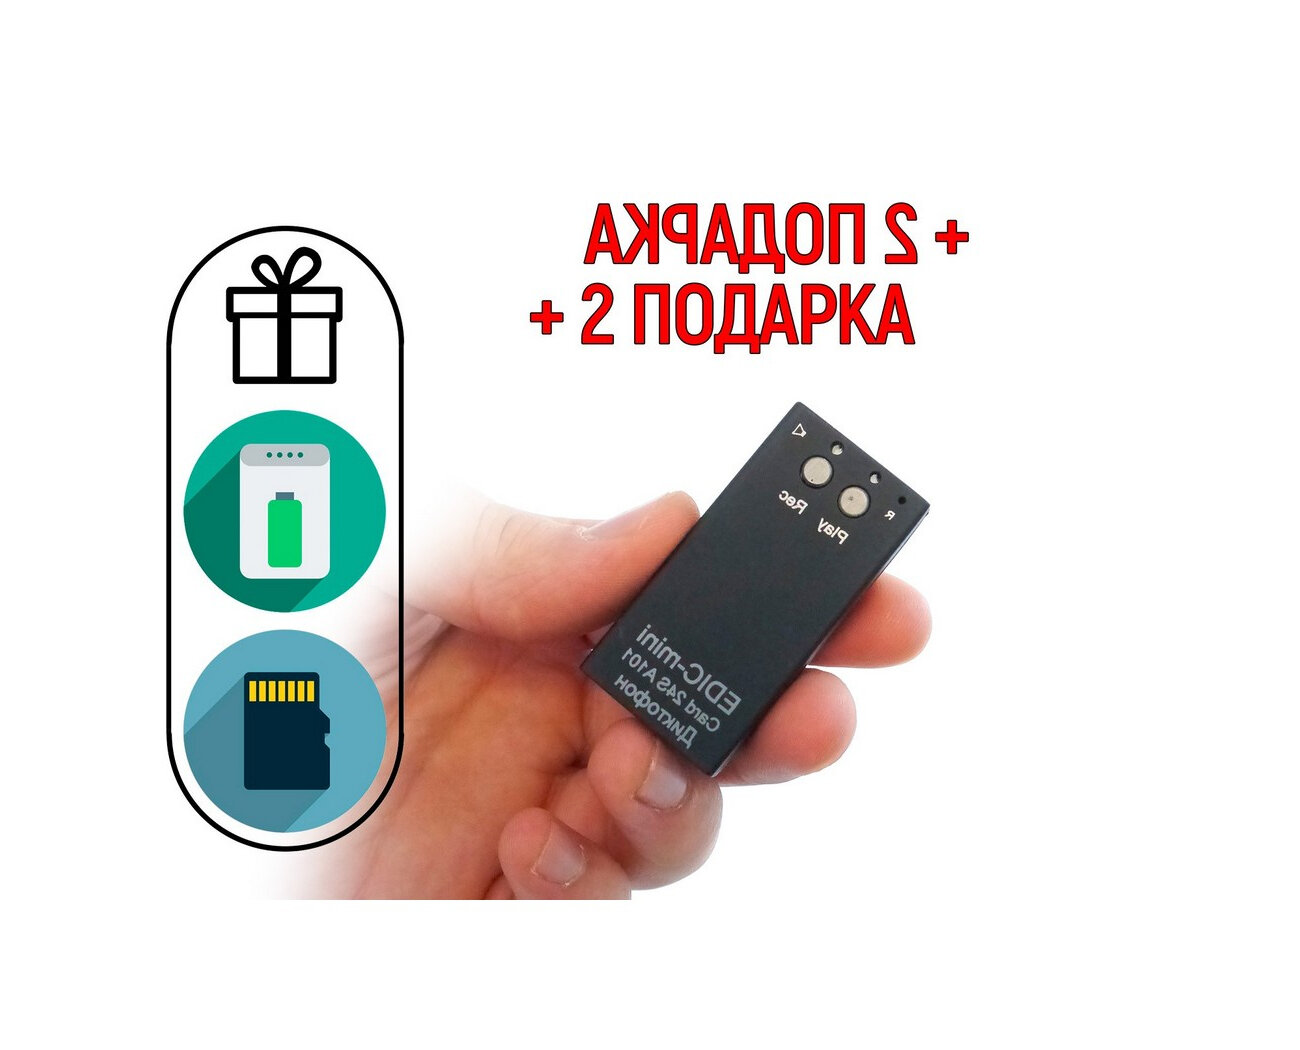 Диктофон для скрытой записи разговора Edic-mini A101 CARD-24-S (R47217IDE) + 2 подарка (Power-bank 10000 mAh + SD карта) - мини диктофон с распознав